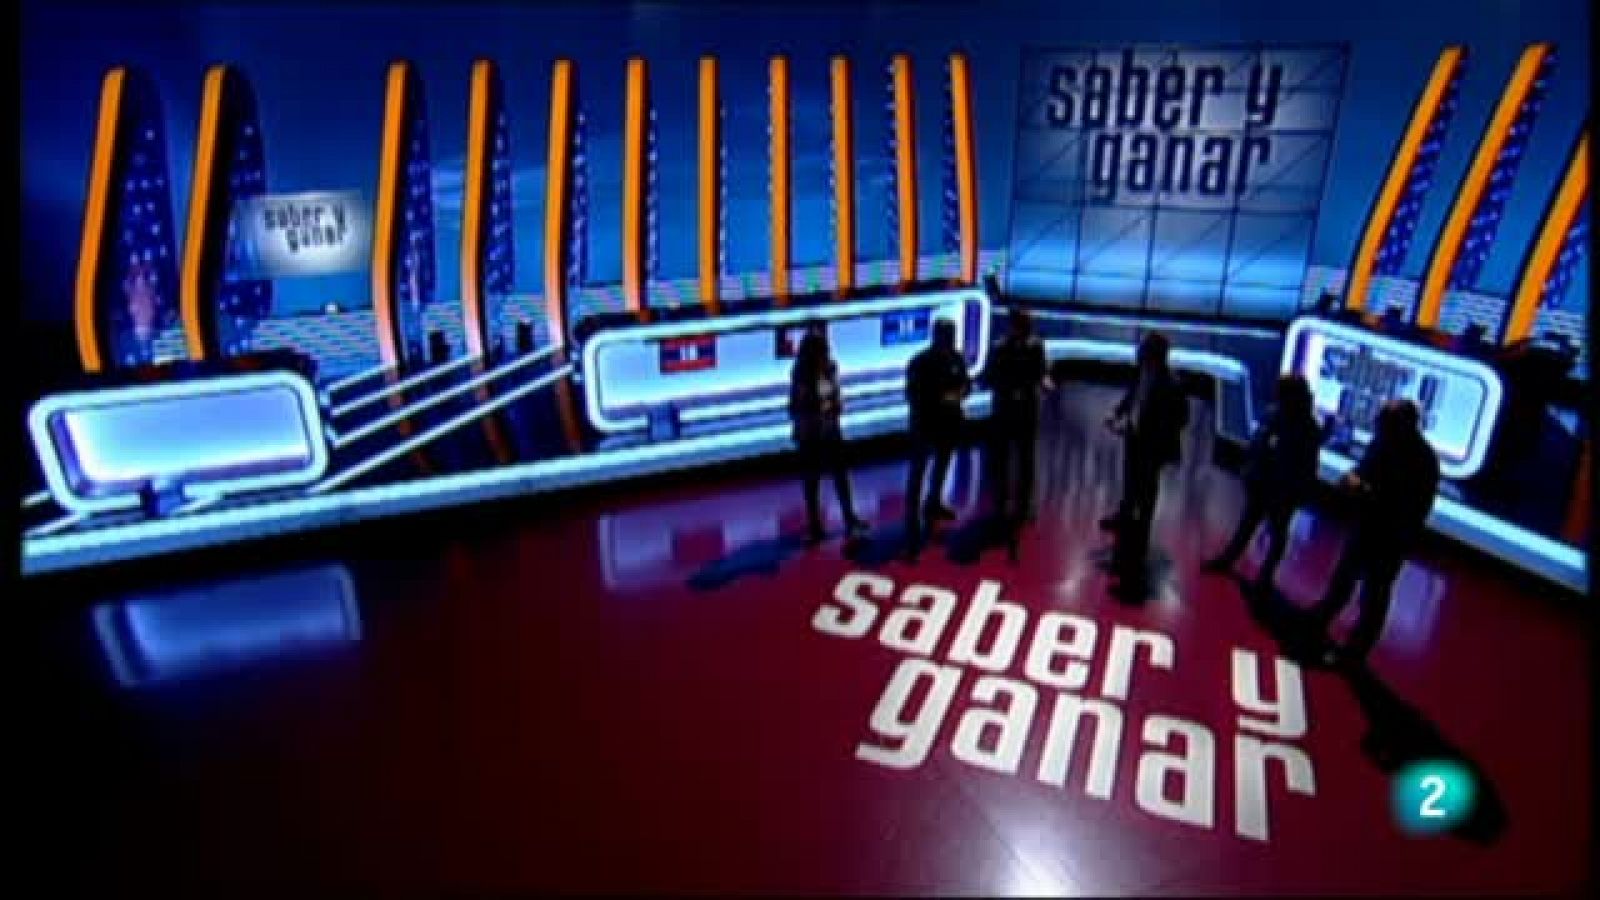 Saber i guanyar - Especial 60 anys TVE Catalunya - RTVE.es